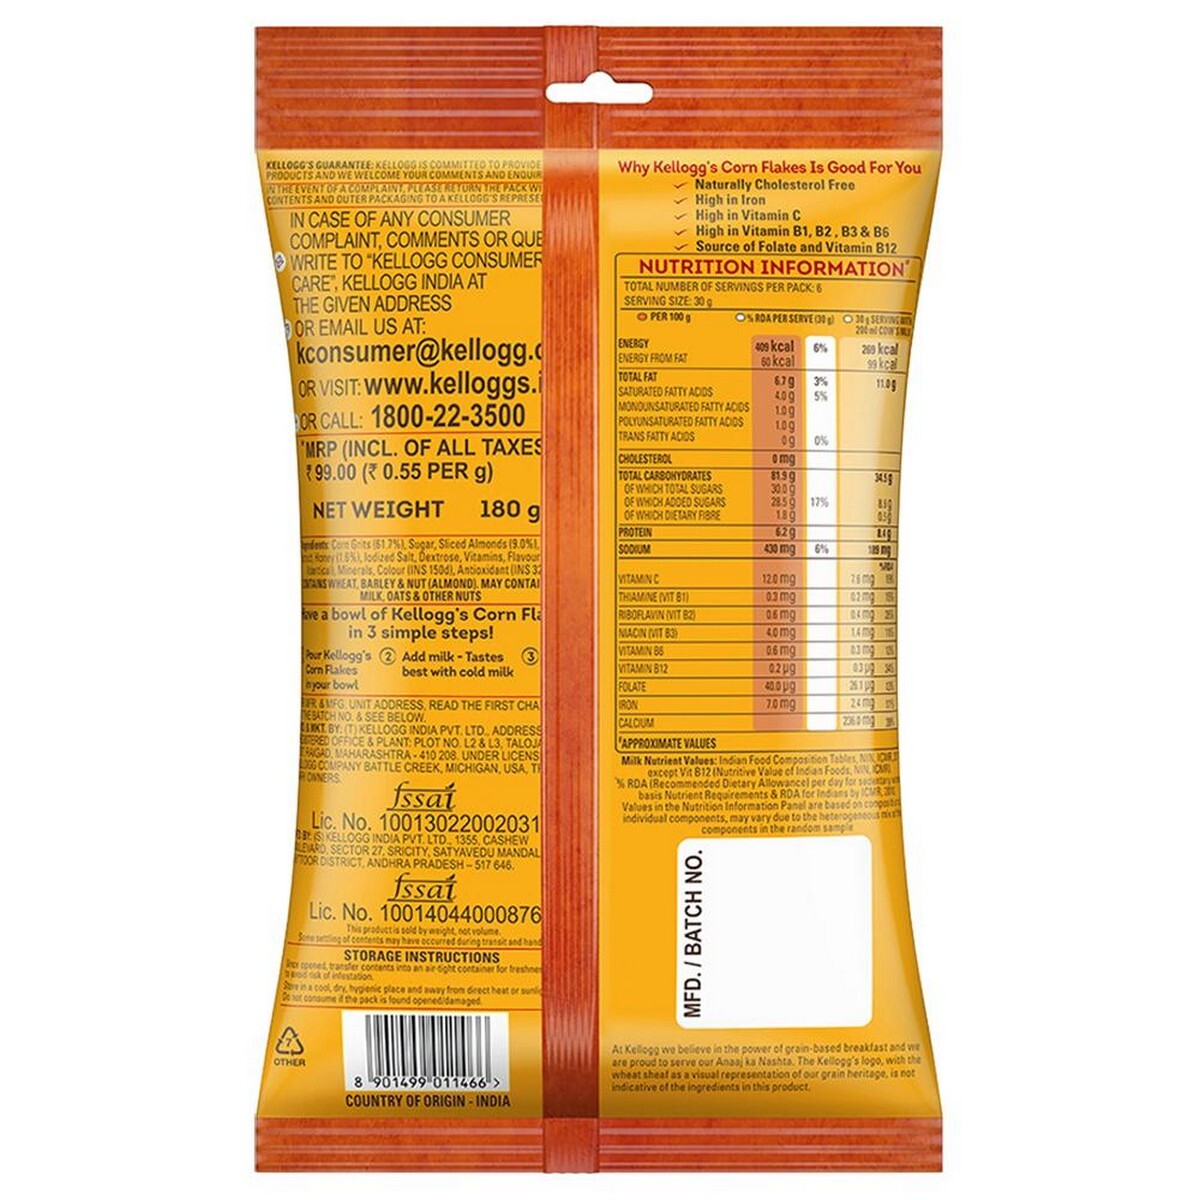 Kello Corn flakes Almond Honey 168gm